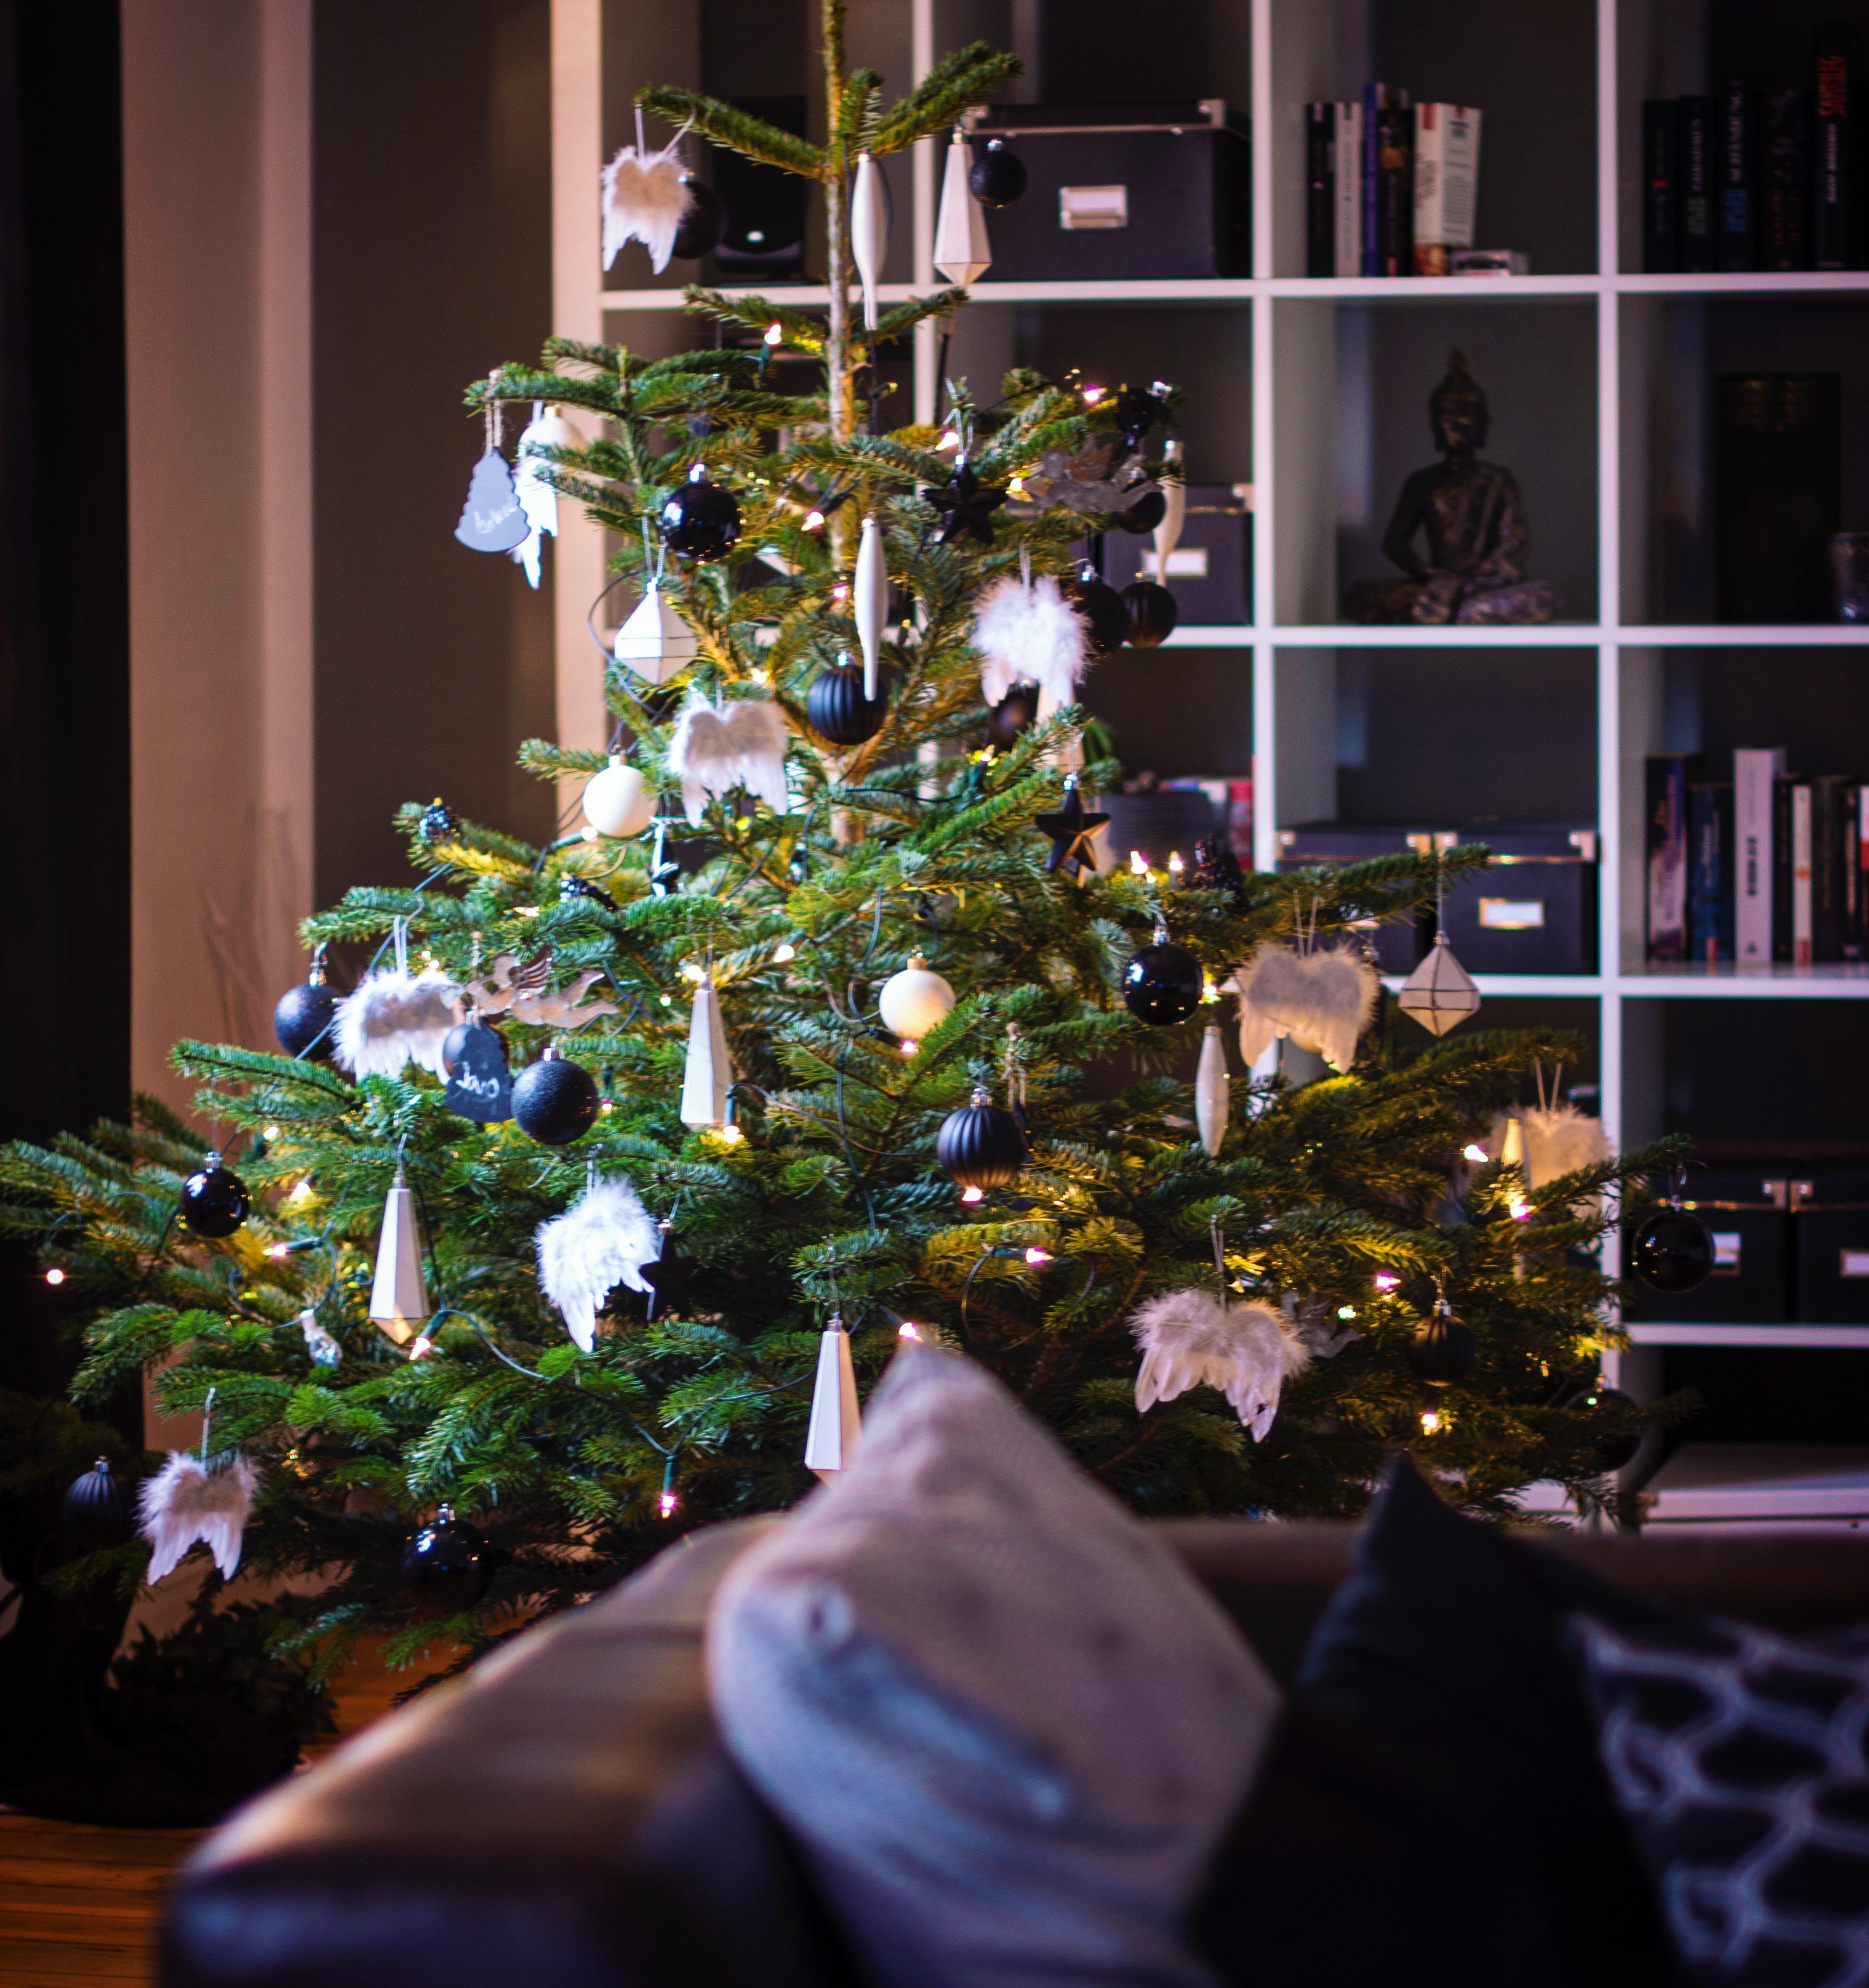 Schöne Weihnachten! #weihnachtsbaum #xmastree #weihnachten #cosytime